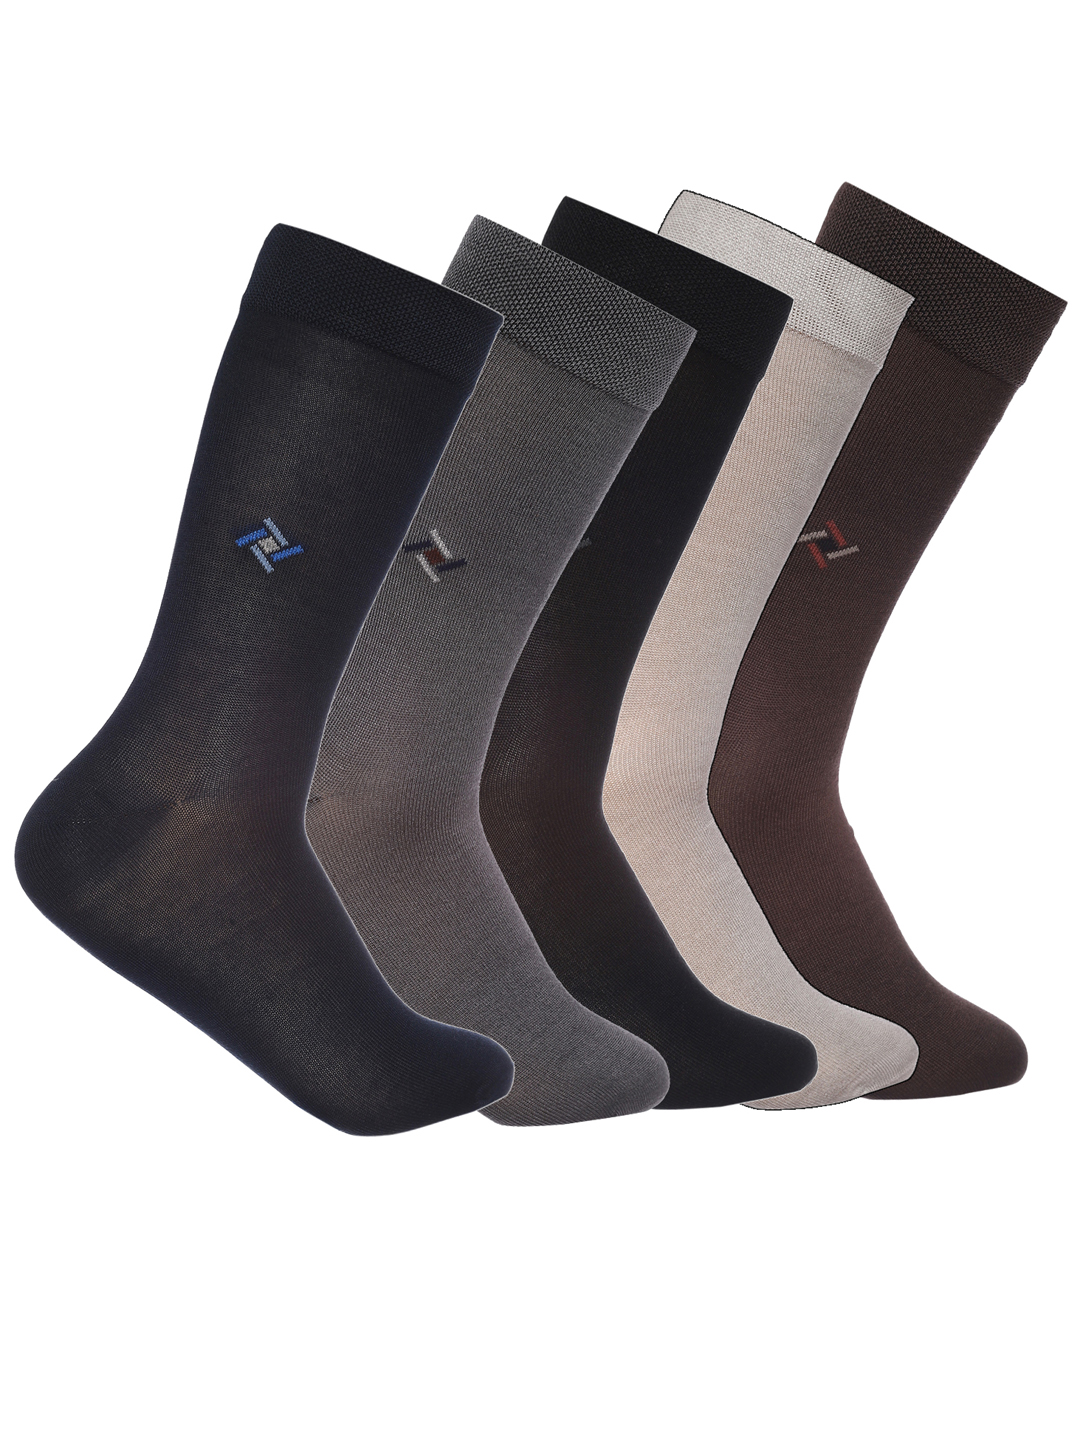 superfine center motif mercerzed cotton crew length socks